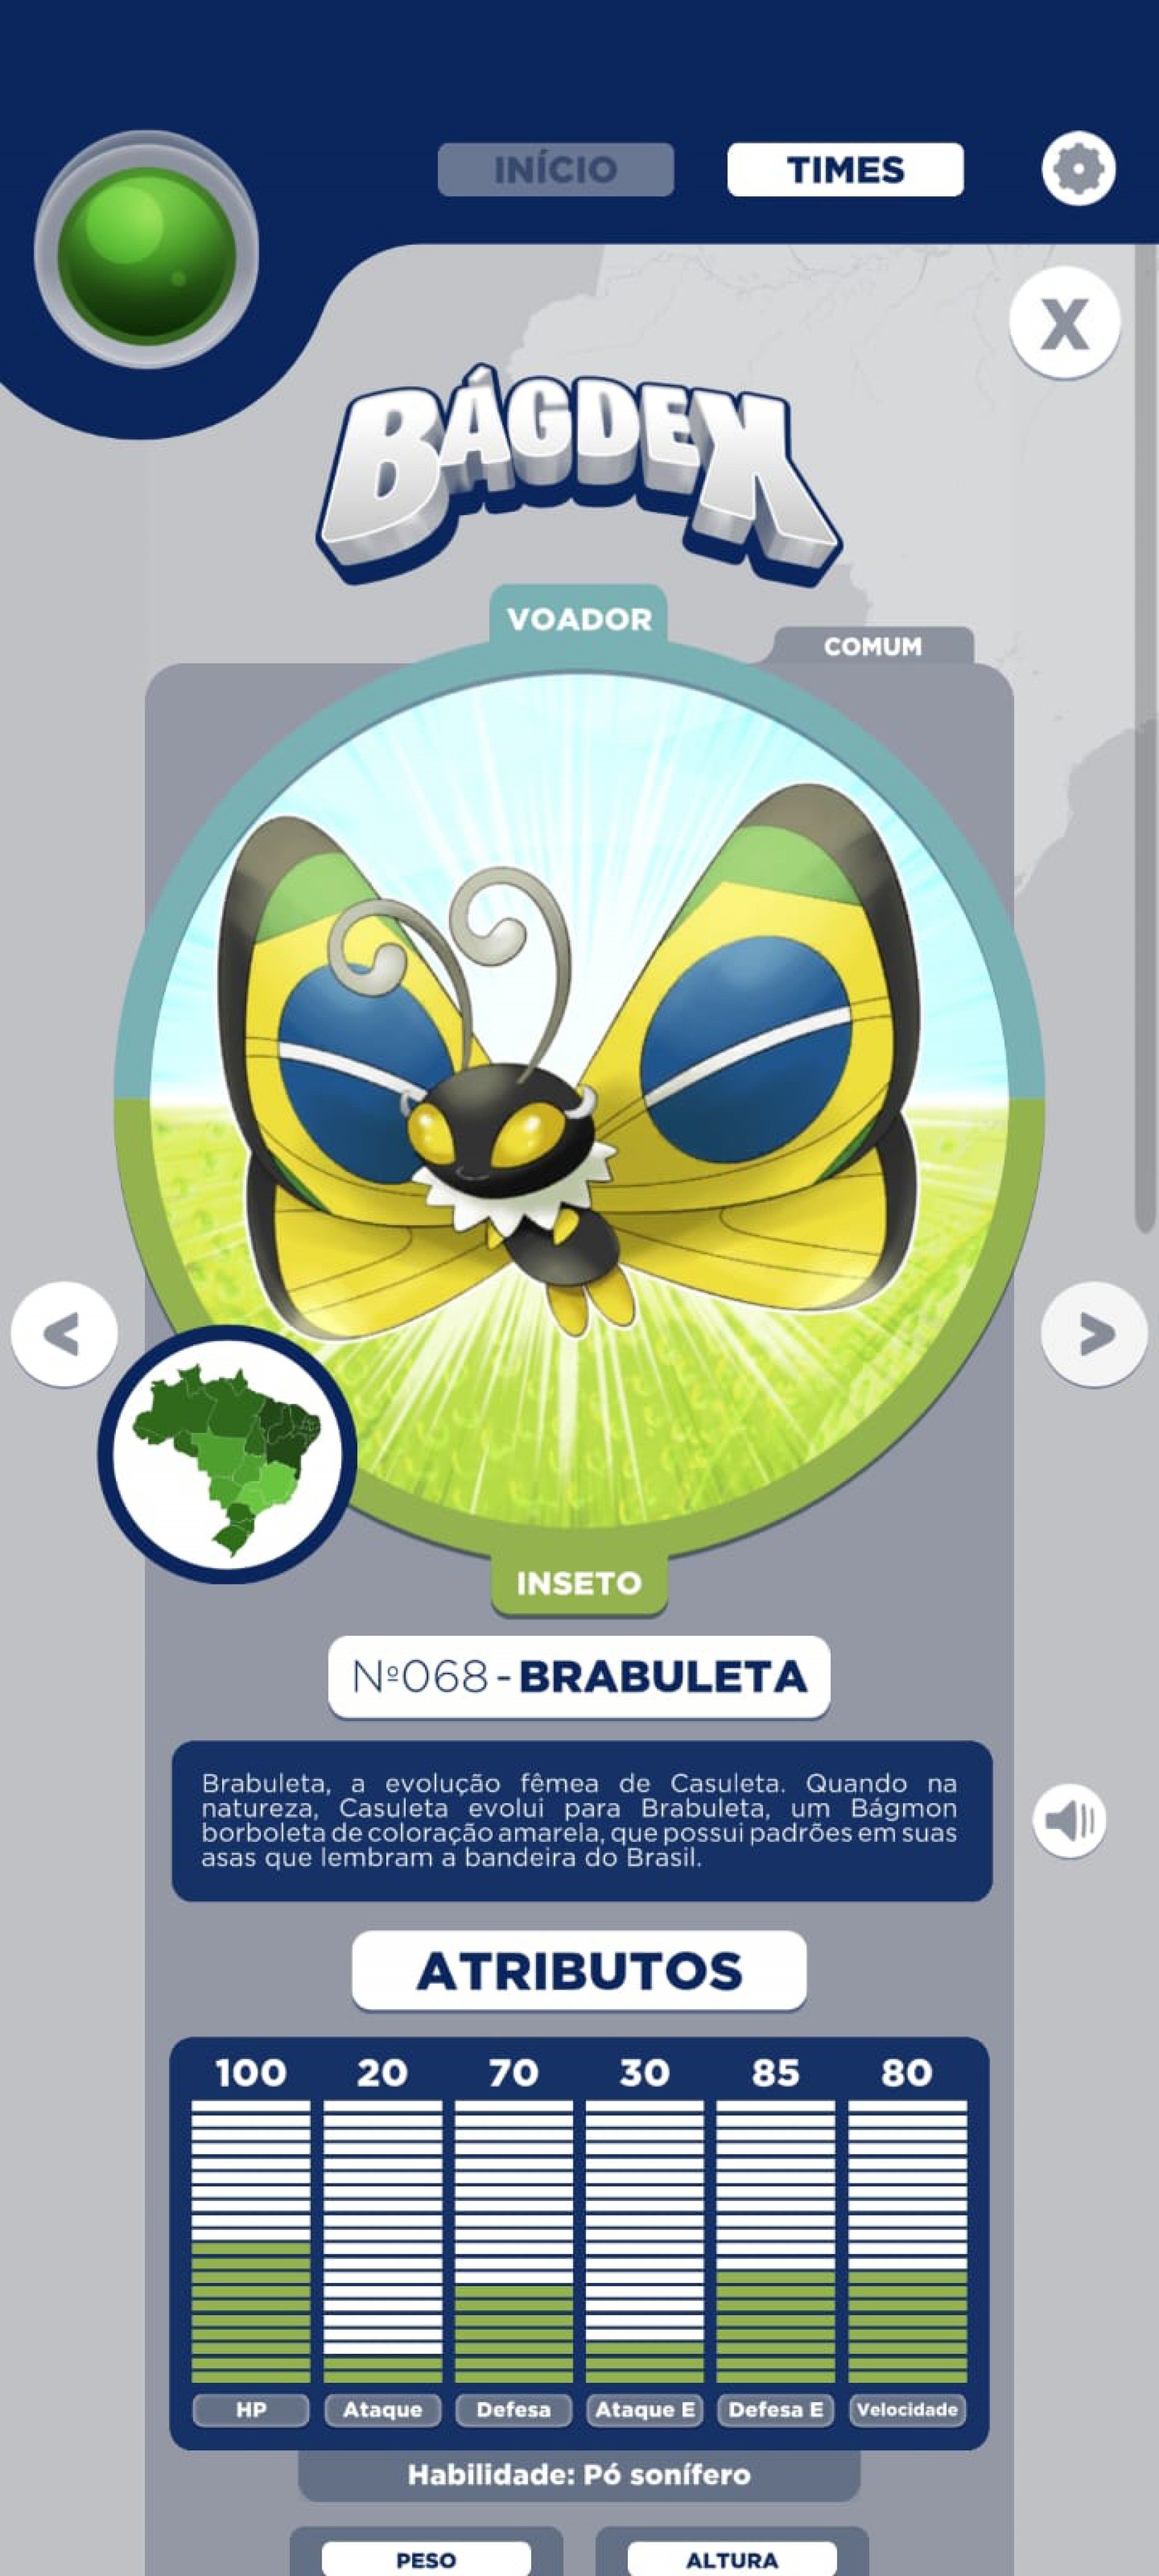 É do Brasil! Bágdex inspirada em Pokémon tem mapa e mais detalhes